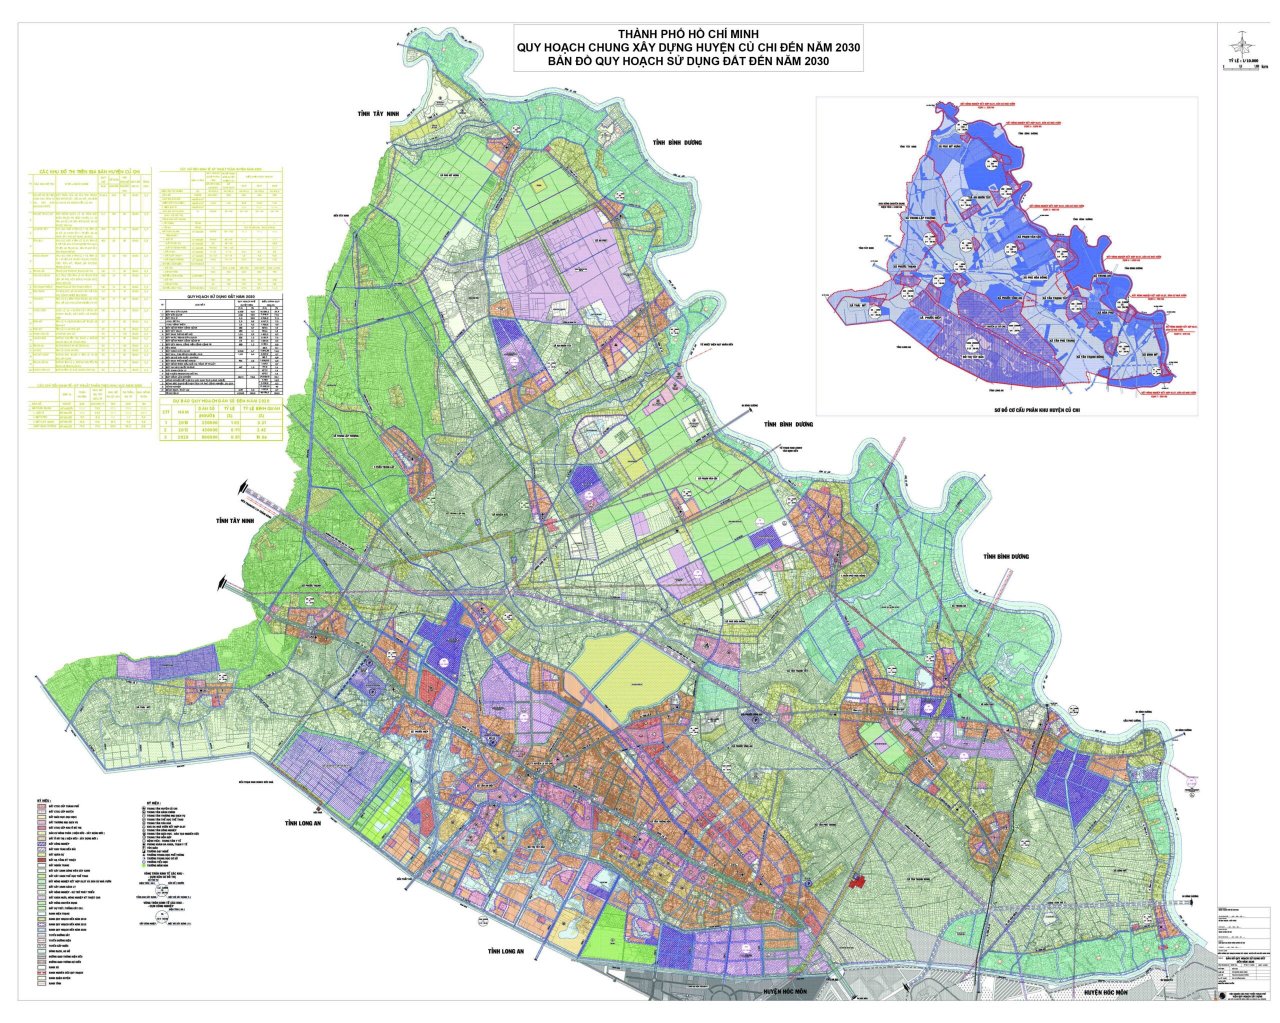 Bản đồ quy hoạch sử dụng đất huyện Củ Chi đến năm 2030 